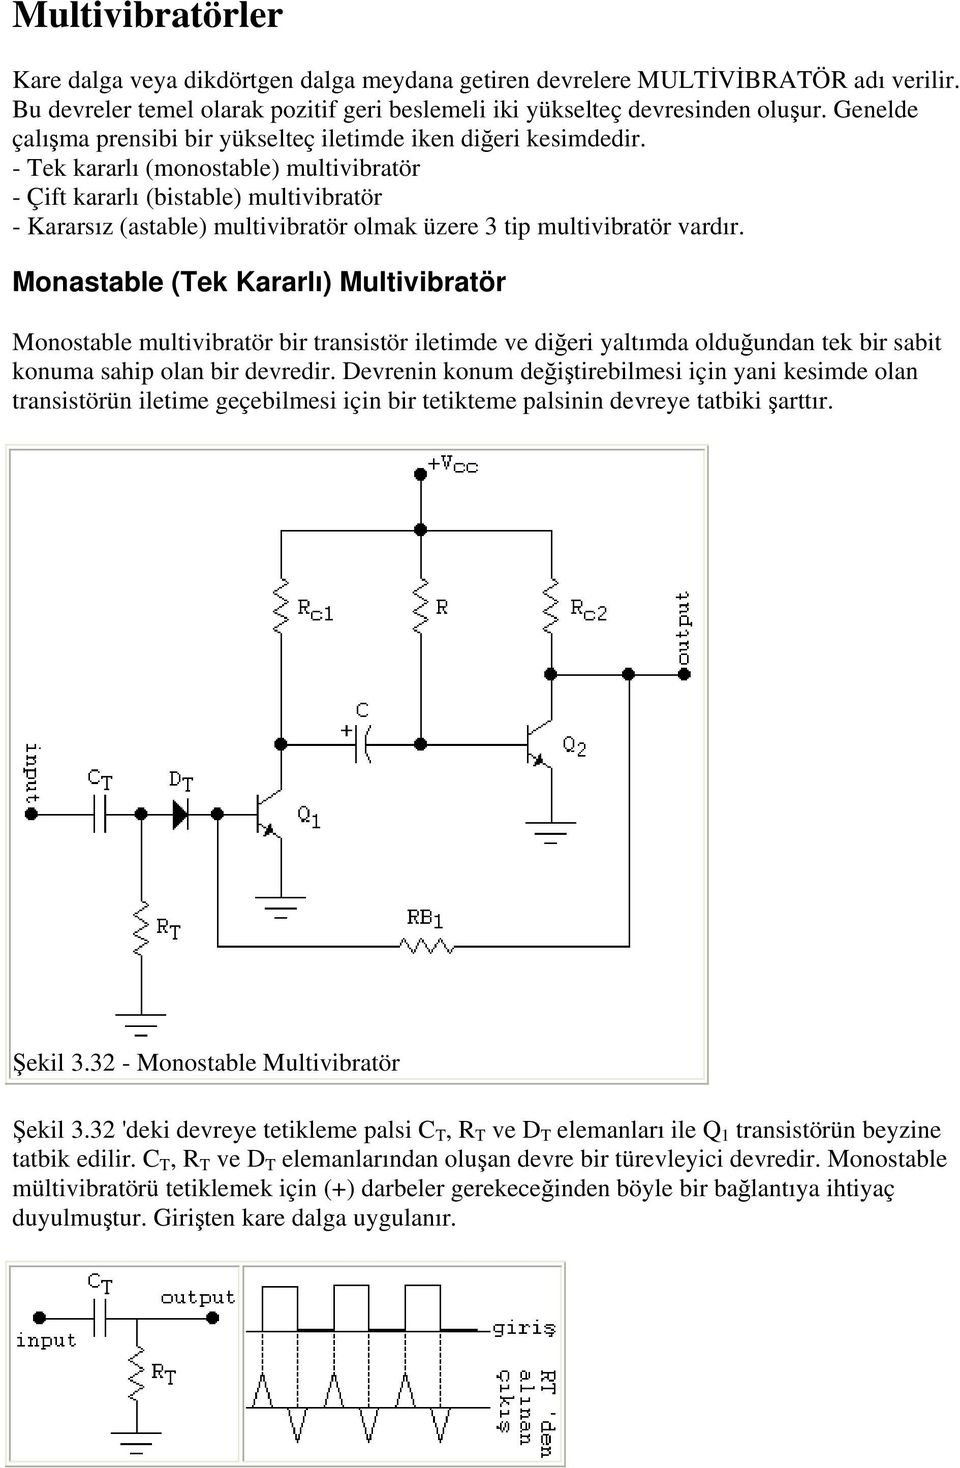 - Tek kararlı (monostable) multivibratör - Çift kararlı (bistable) multivibratör - Kararsız (astable) multivibratör olmak üzere 3 tip multivibratör vardır.